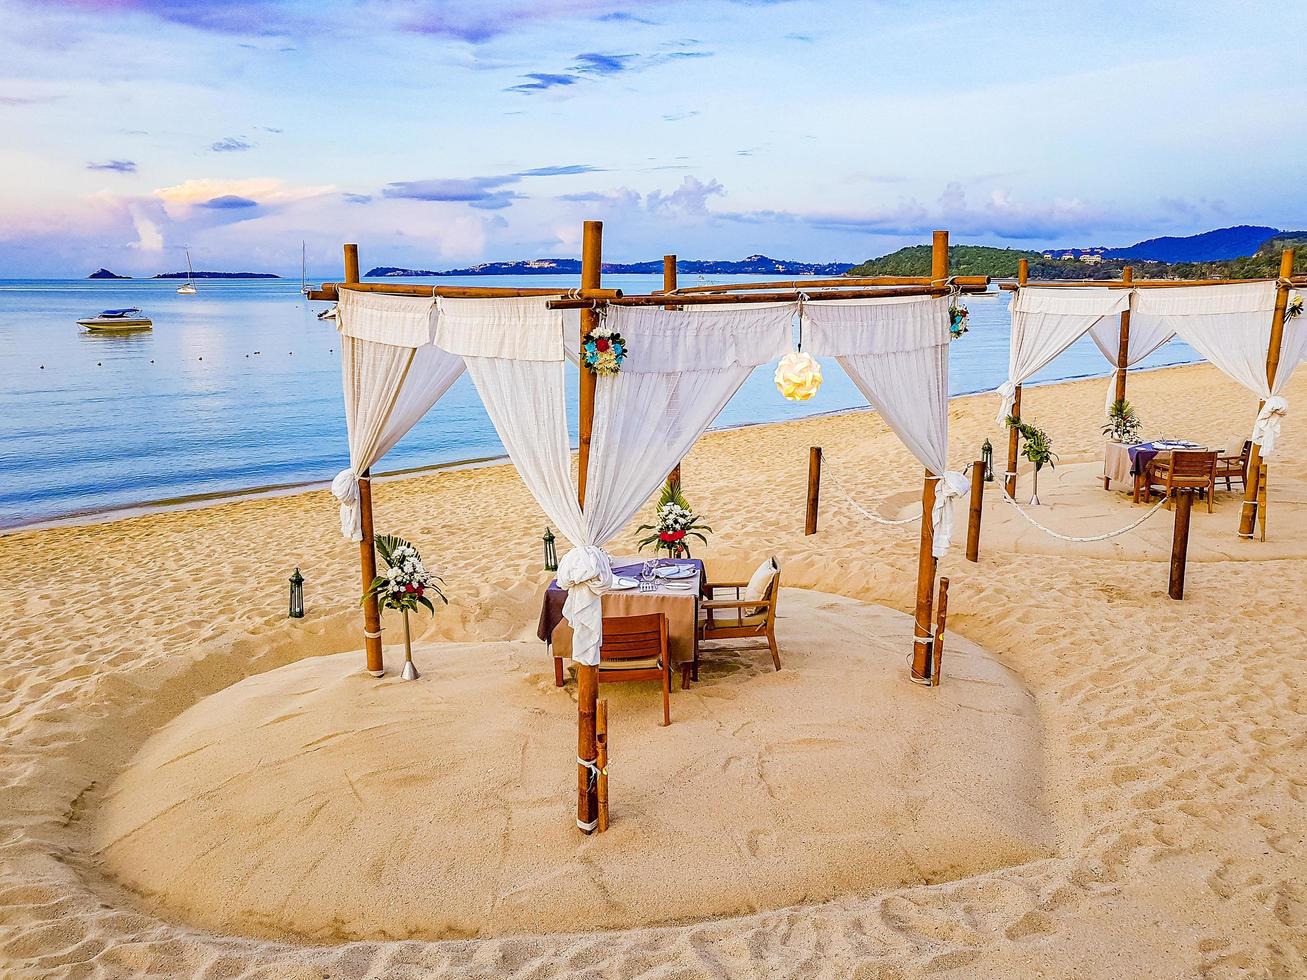 Cena privada romántica en luna de miel en la playa de Koh Samui, Tailandia, 2018 foto